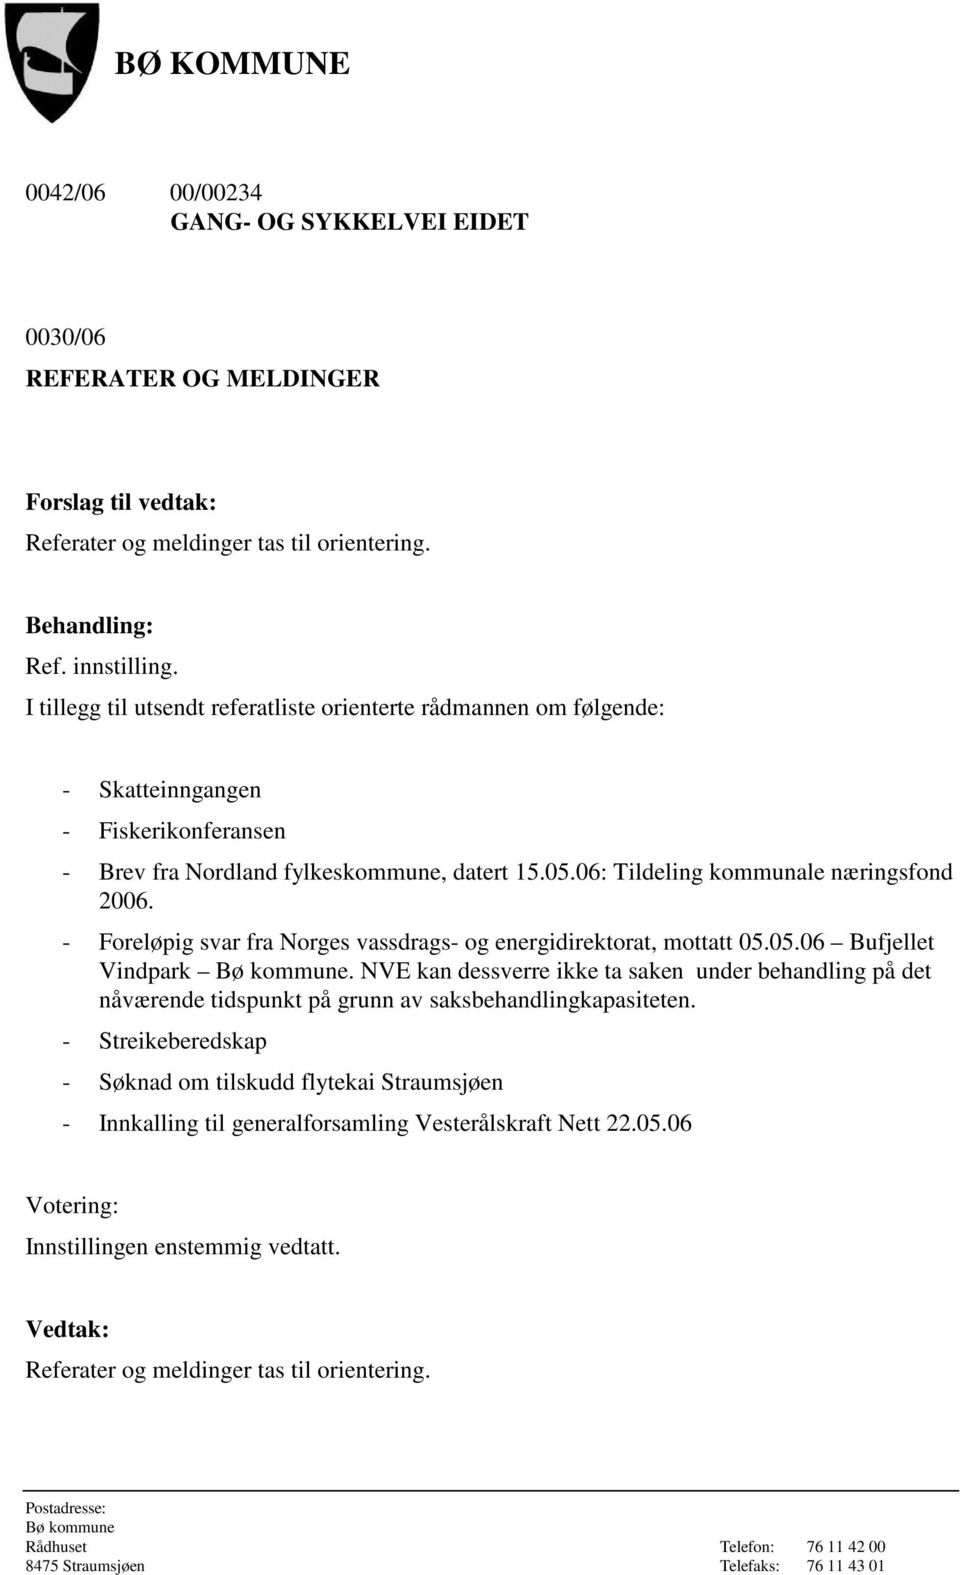 06: Tildeling kommunale næringsfond 2006. - Foreløpig svar fra Norges vassdrags- og energidirektorat, mottatt 05.05.06 Bufjellet Vindpark.